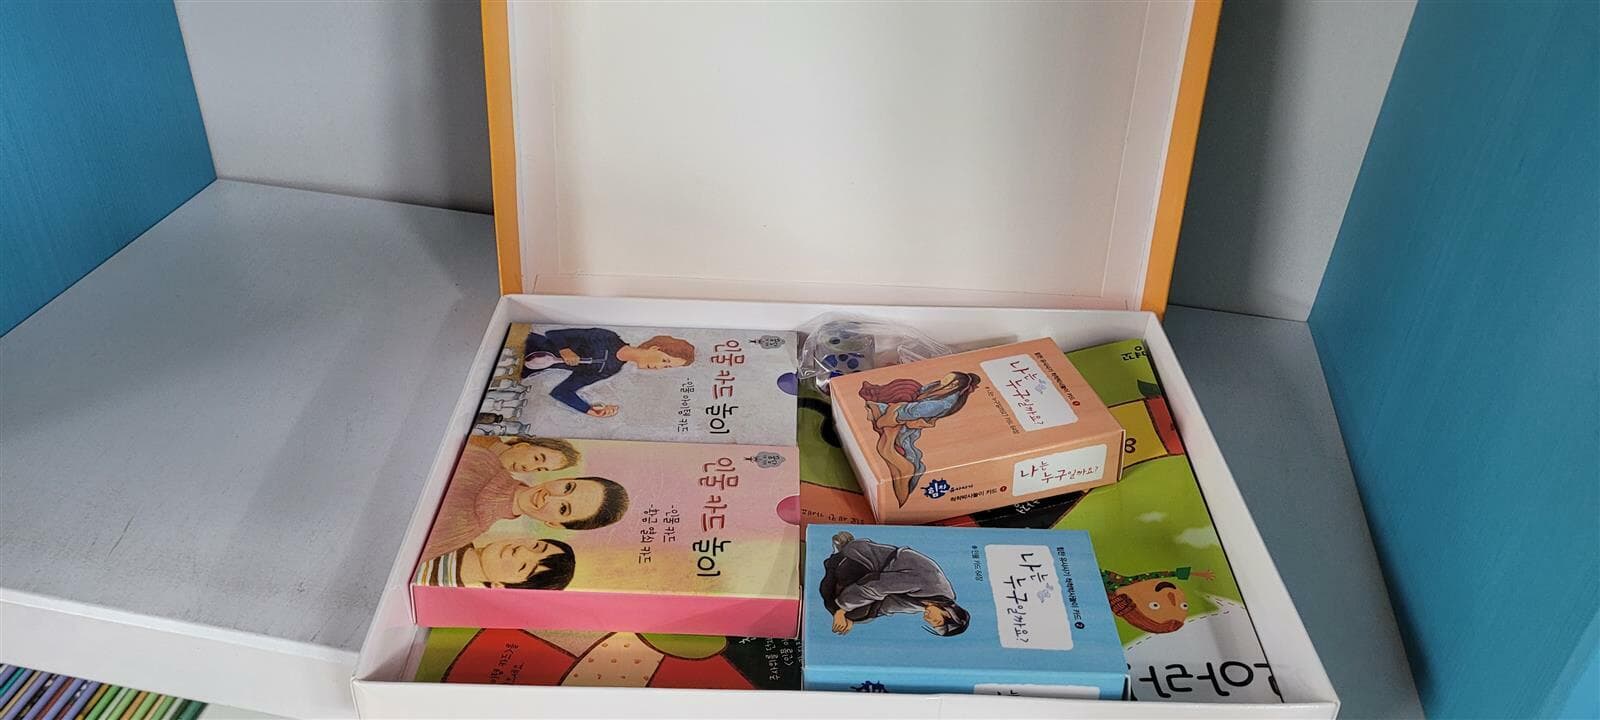 명꼬 세이펜버전 꿈담인물 그림책 1-64+인물놀이카드 전권세트(실사진참조)